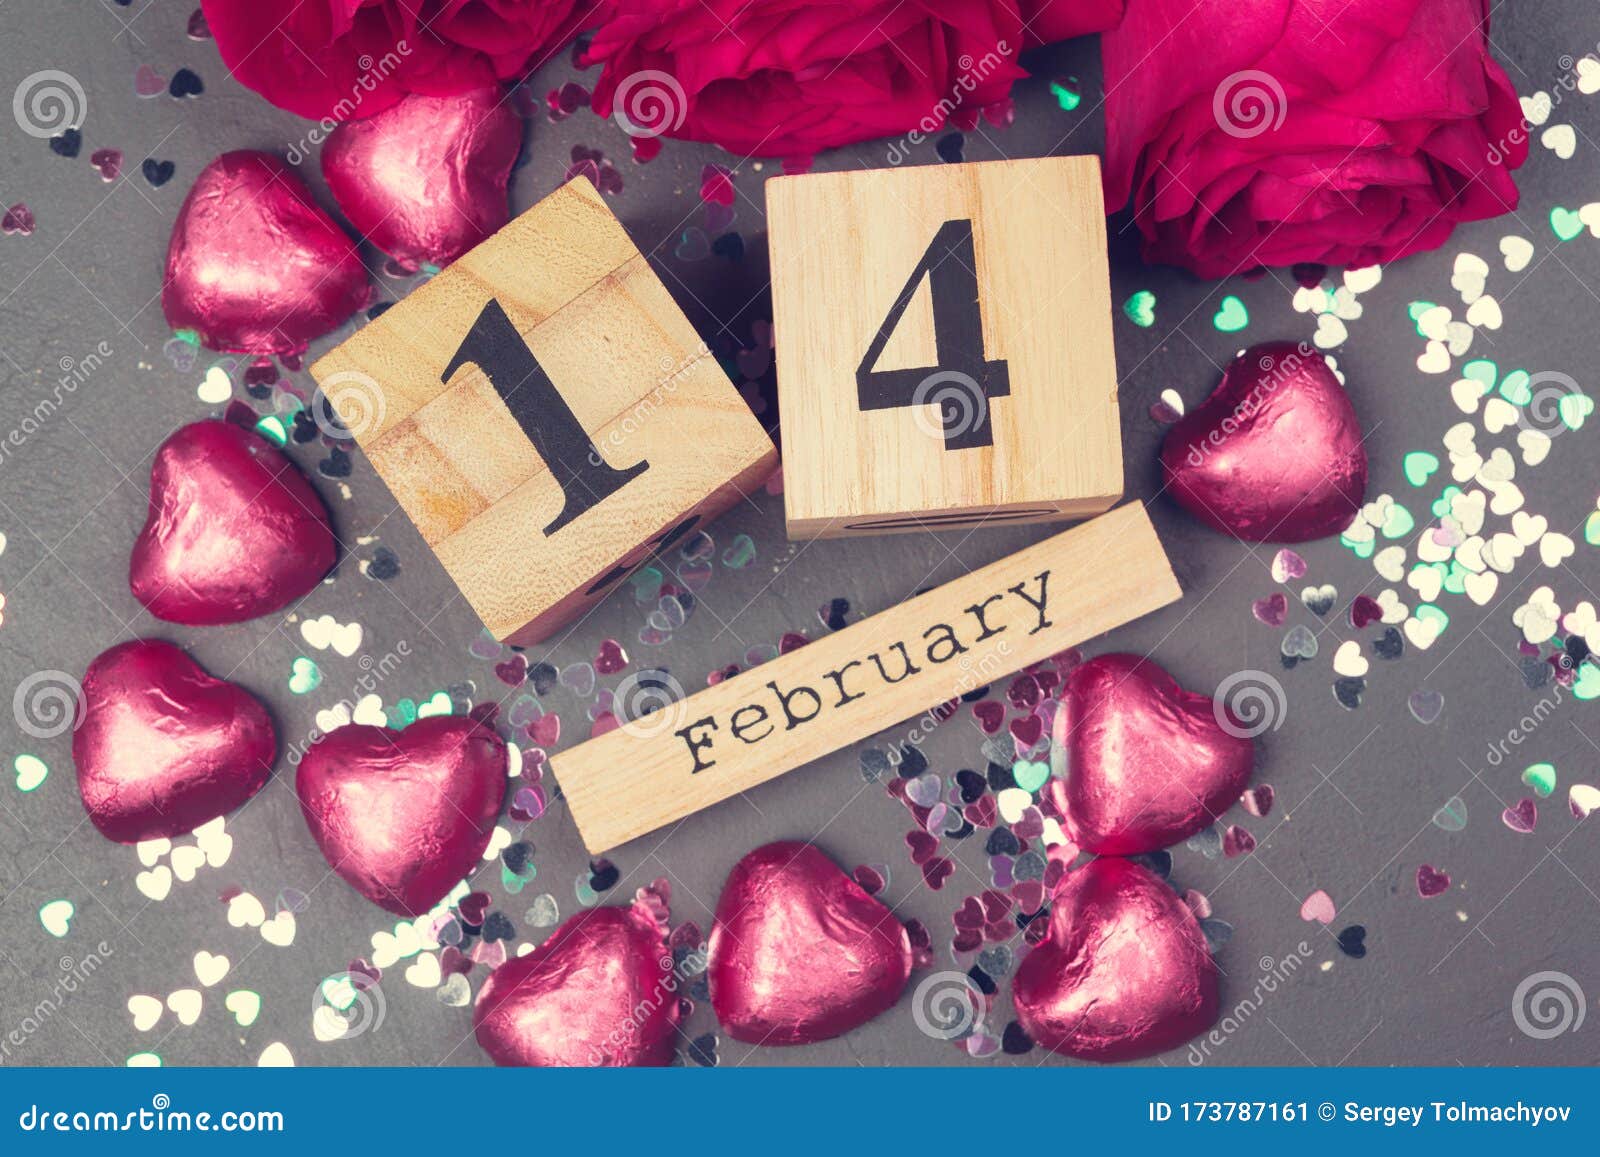 14 14 De Febrero En Calendario Y Adornos Para El Día De San Valentín.  Imagen de archivo - Imagen de ideas, recordatorio: 173787161